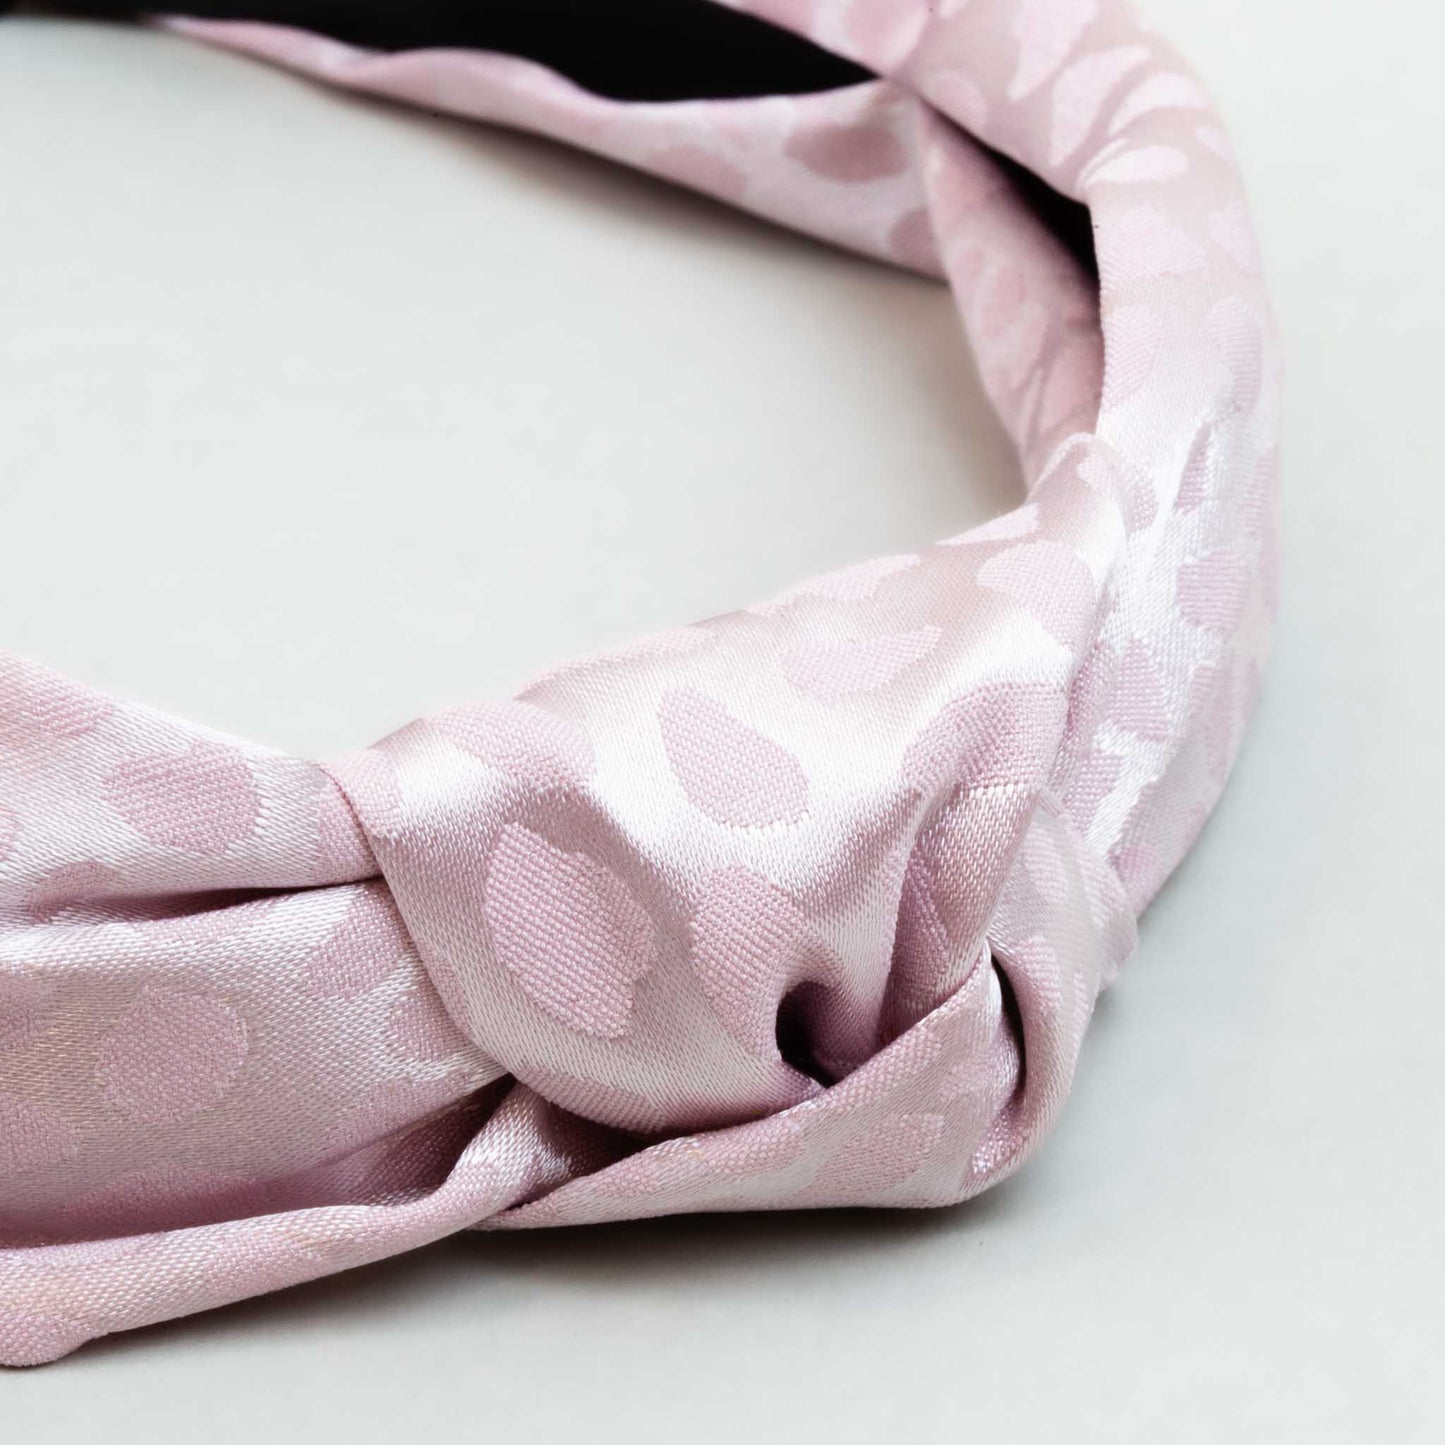 Cordelută de păr lată cu nod și material textil cu forme abstracte - Roz